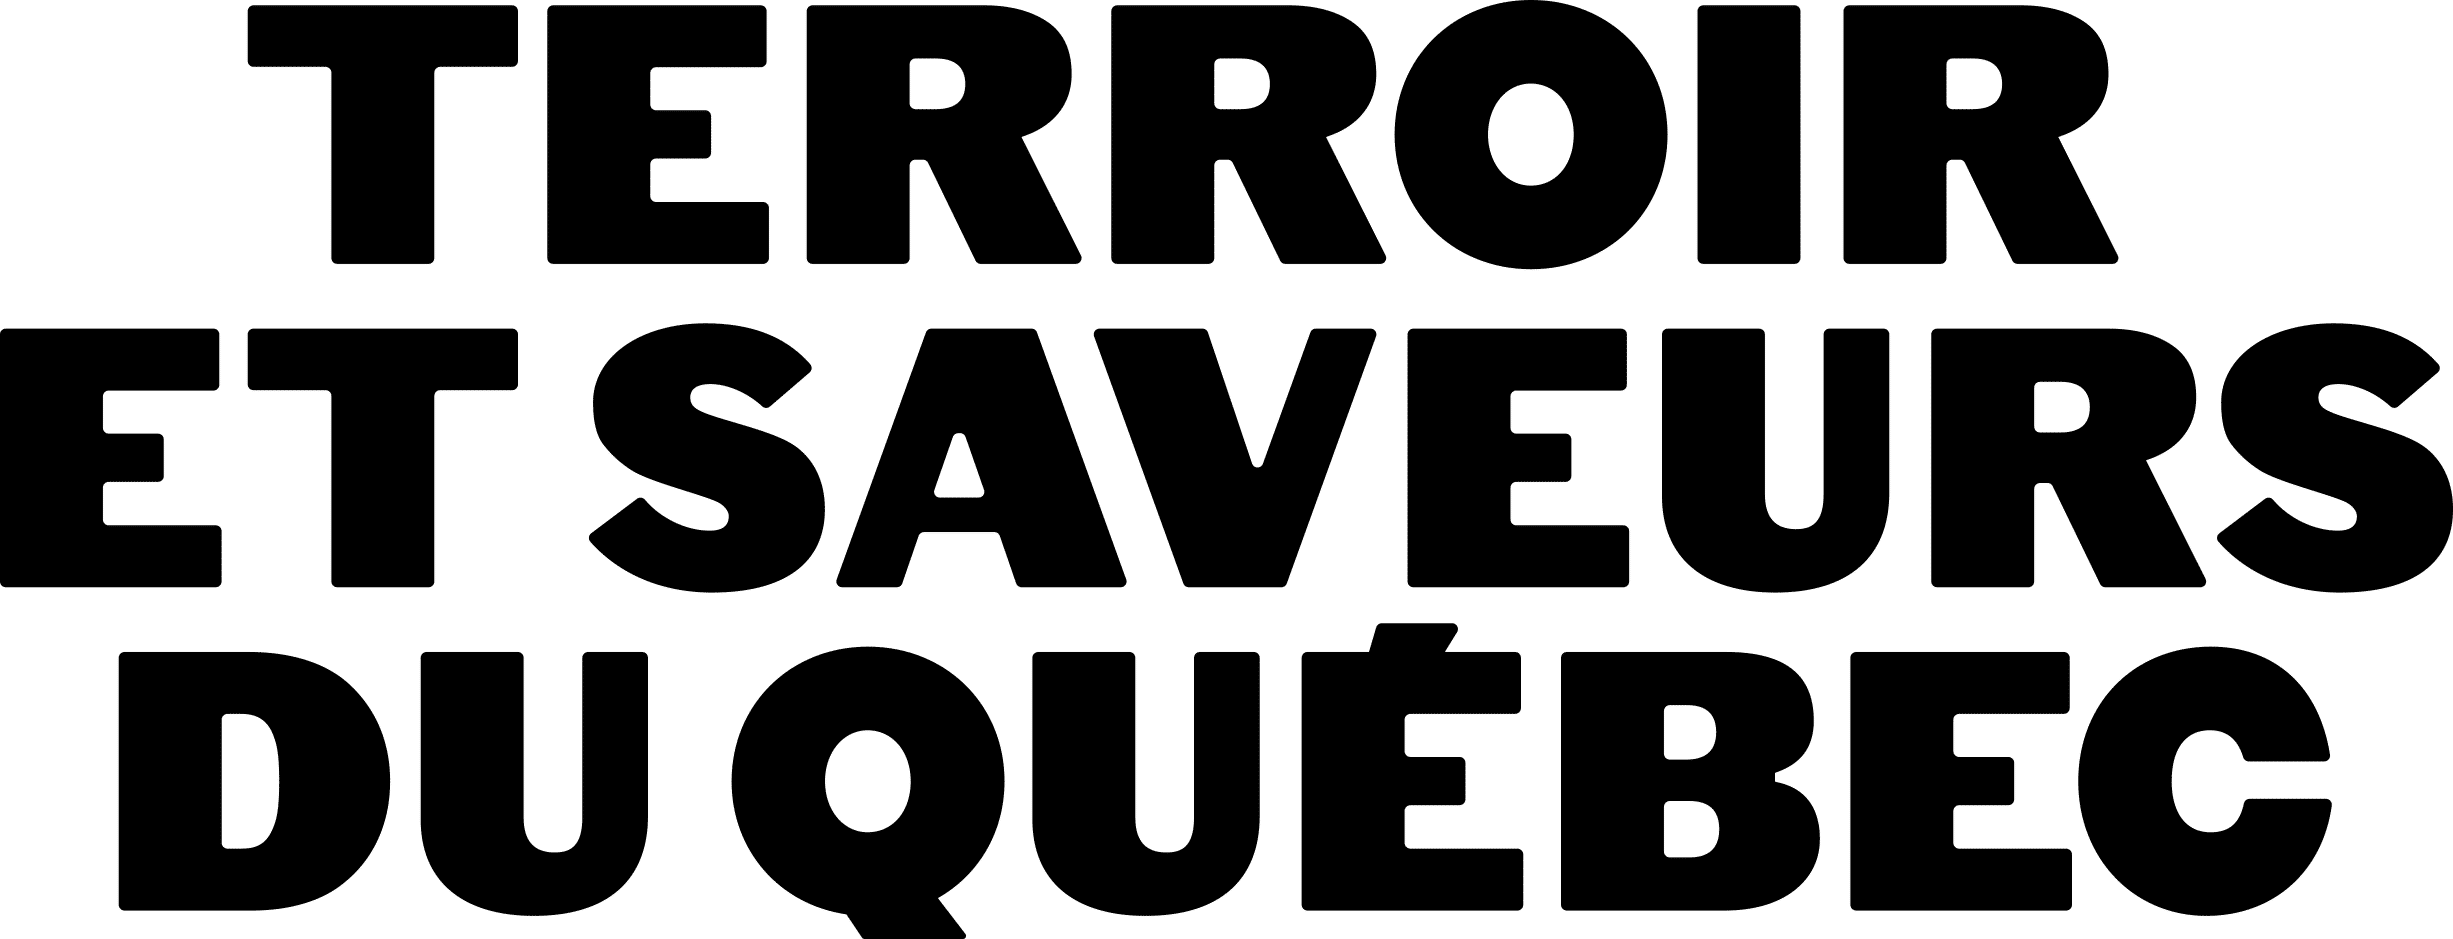 TerroirSaveurQuebec_Logo_RGB-K